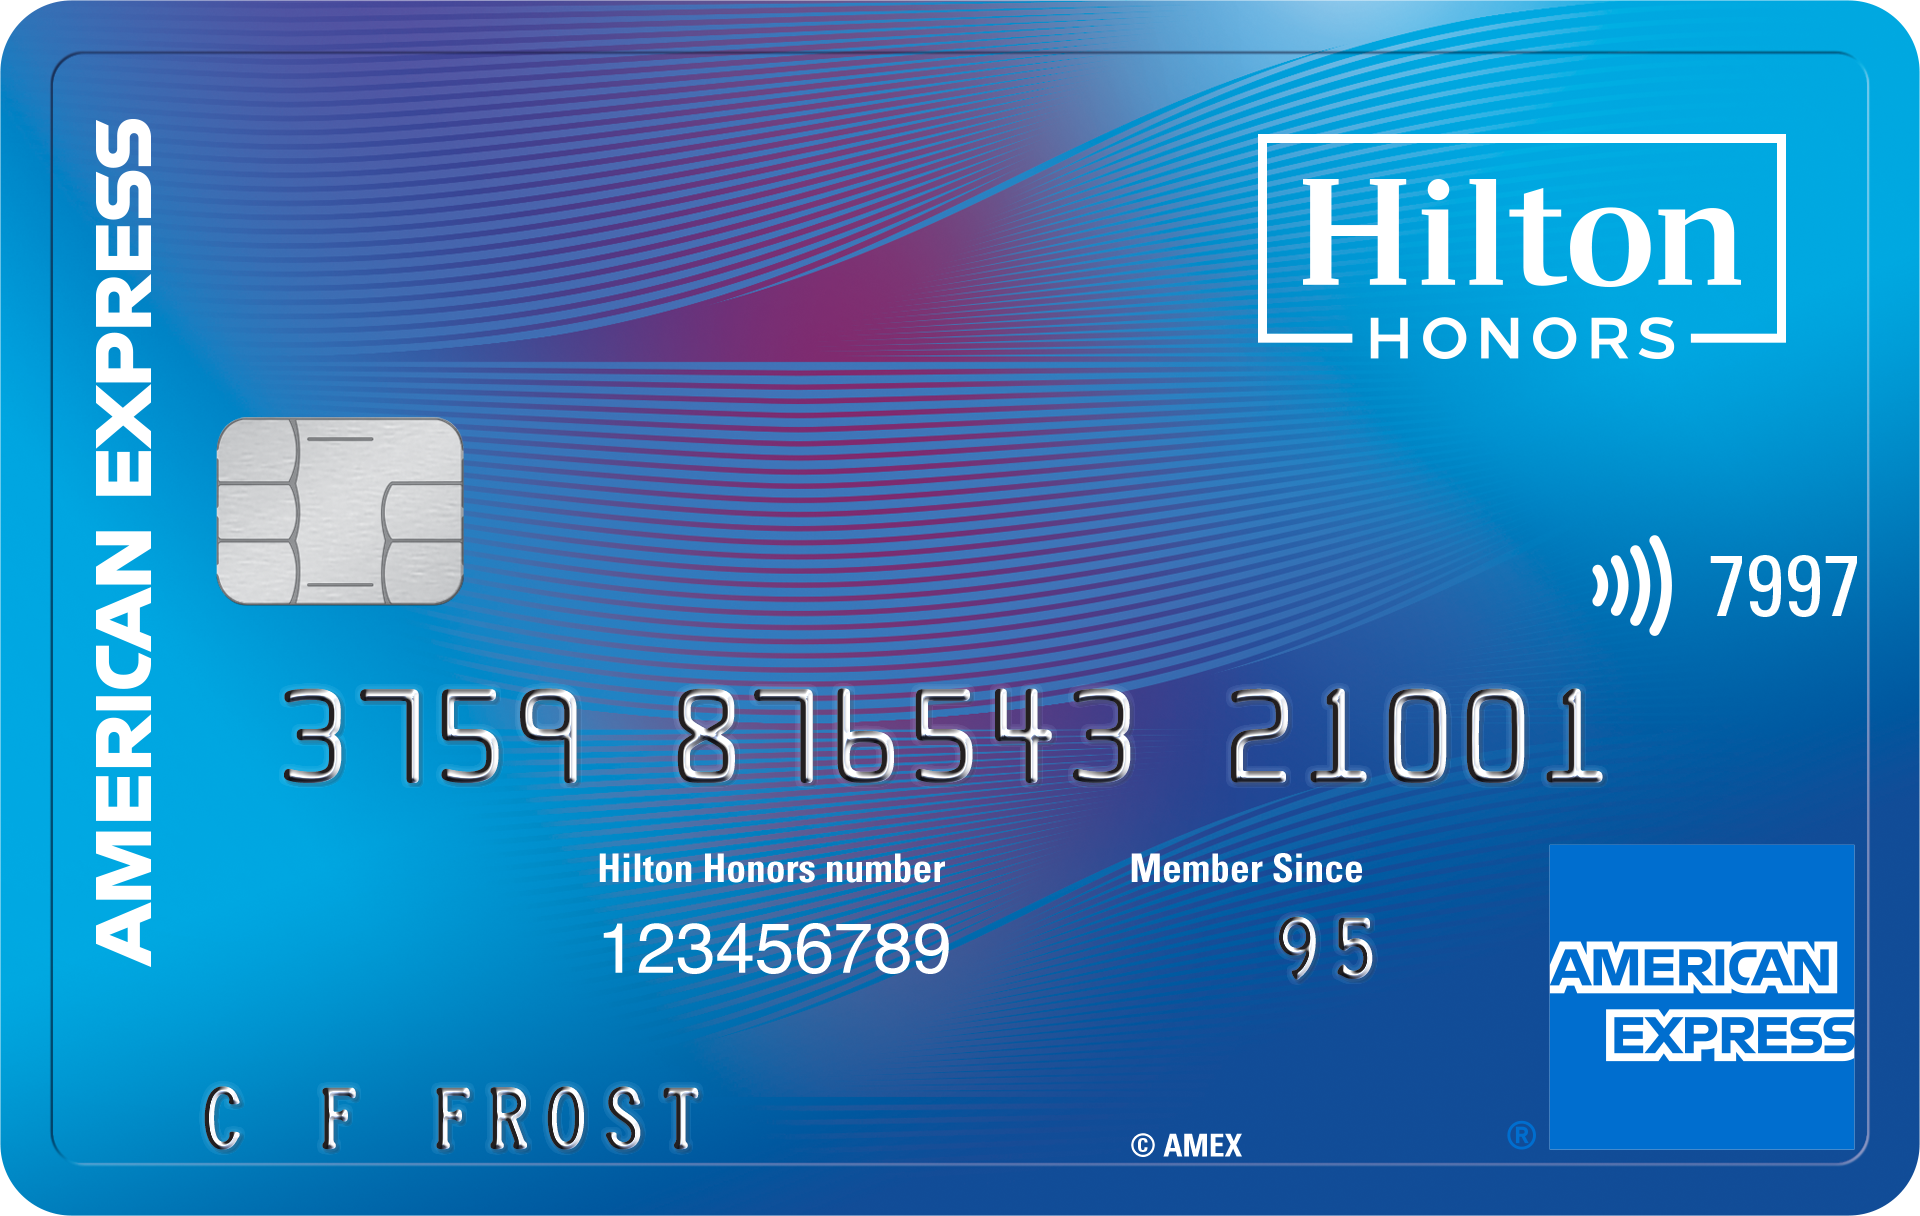 La tarjeta Hilton Honors Card, con chip, ofrece pago sin contacto